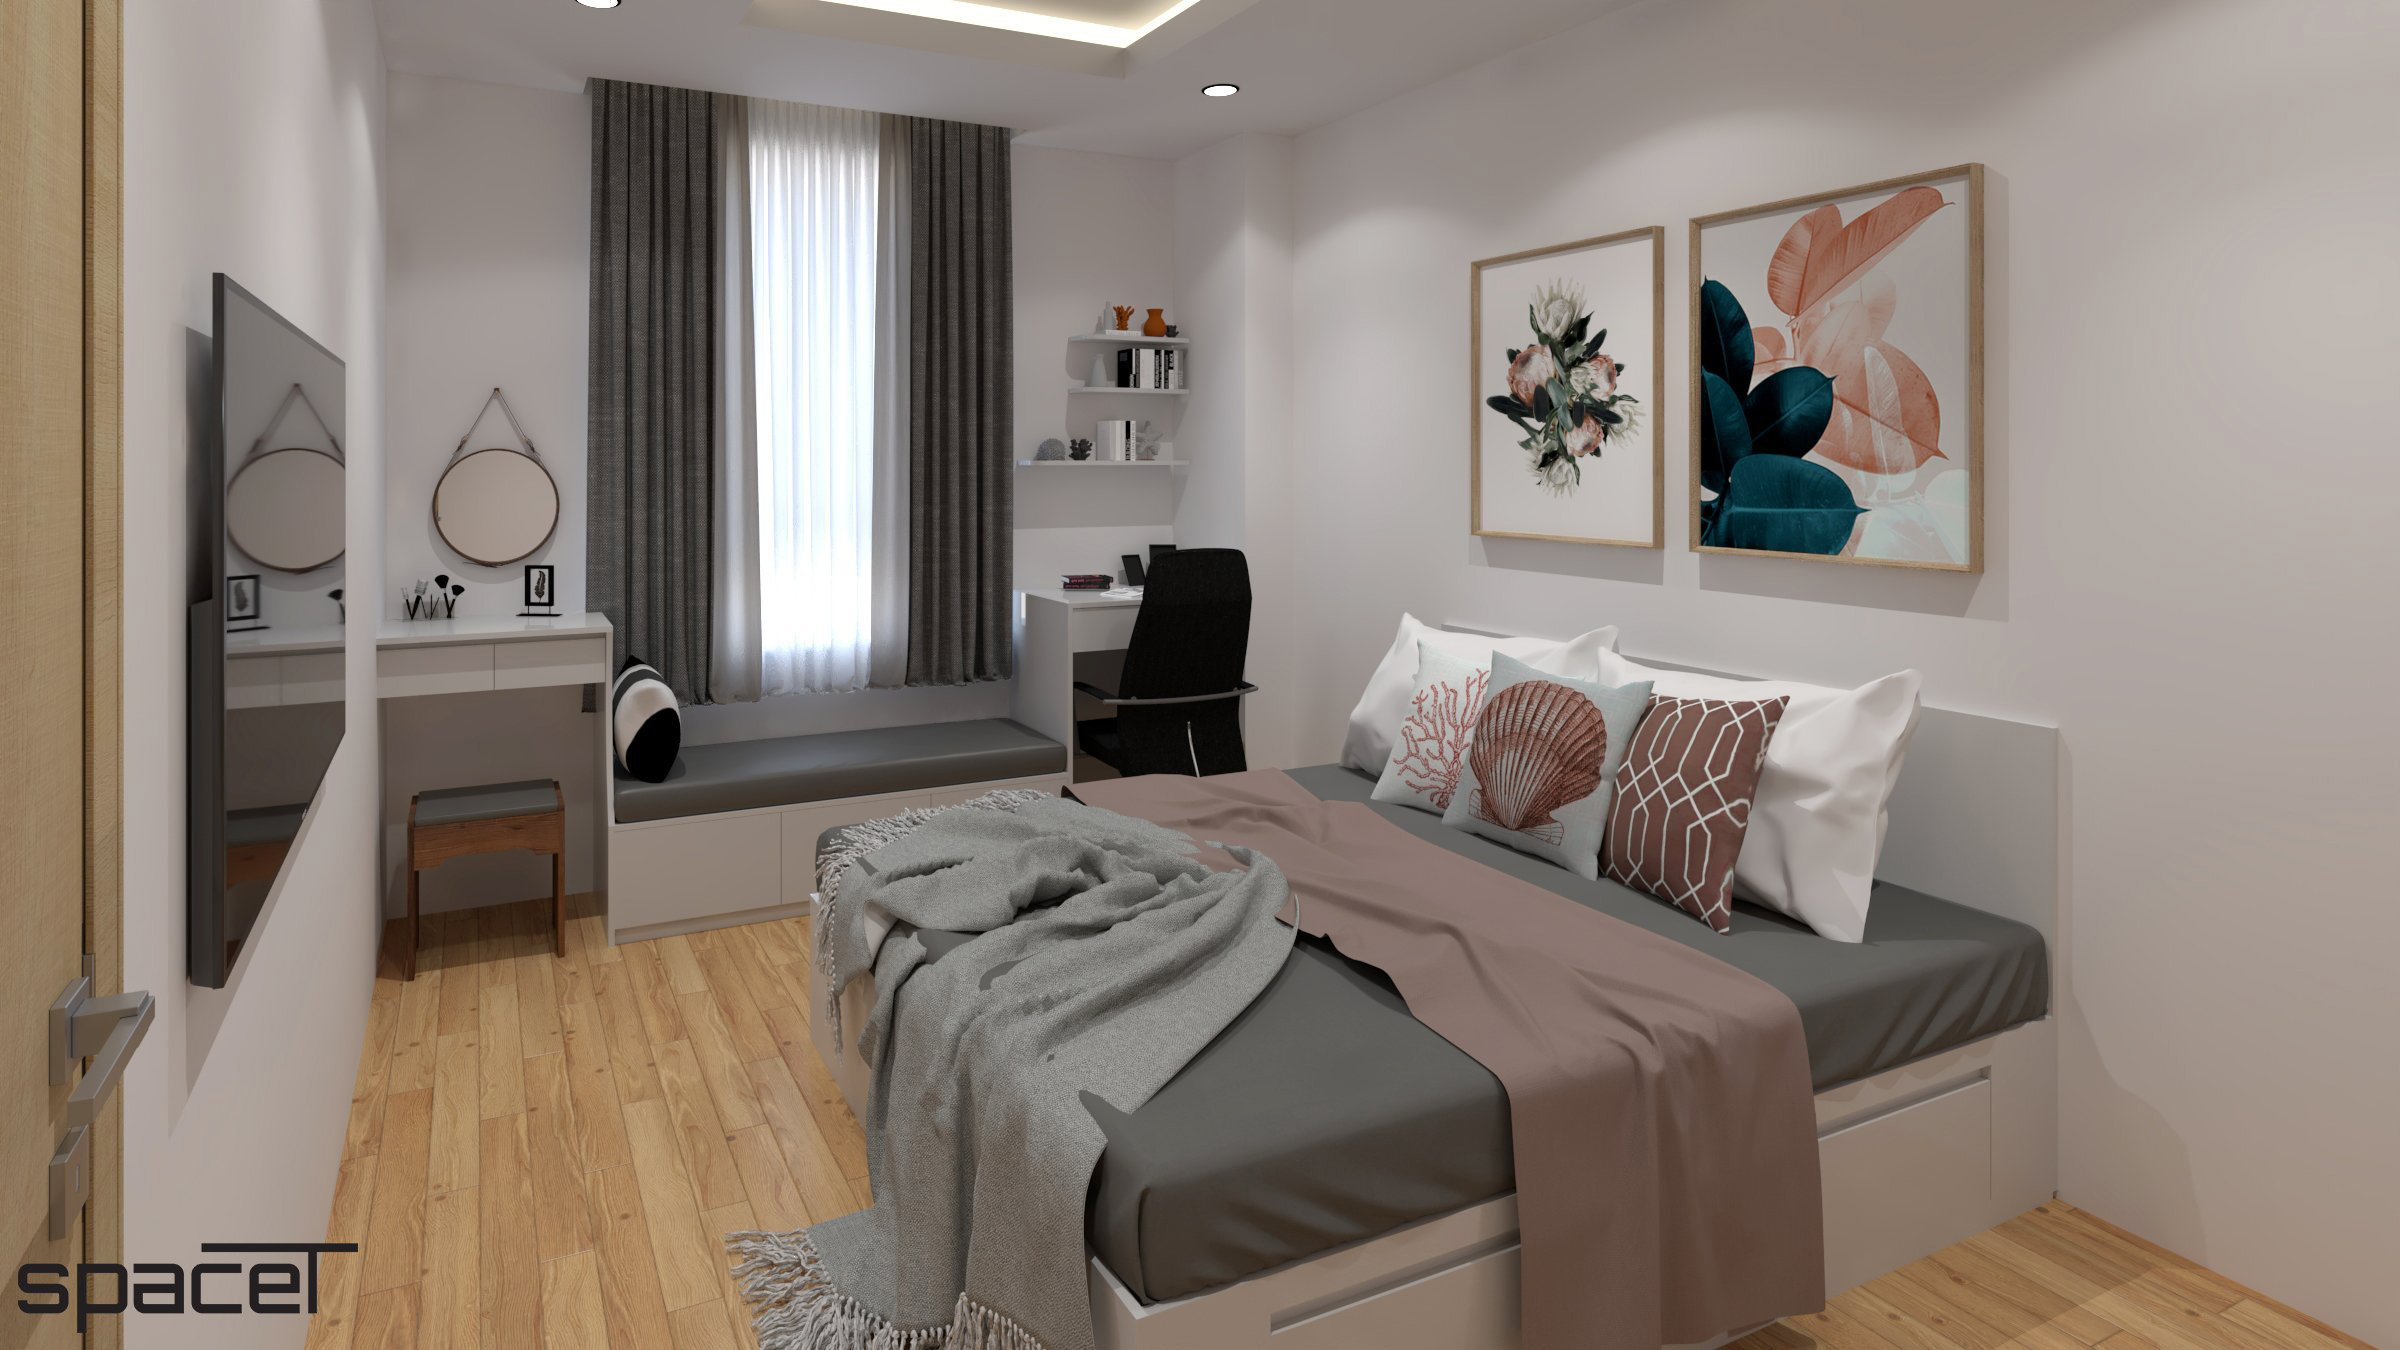 Phòng ngủ, phong cách Bắc Âu Scandinavian, thiết kế concept nội thất, căn hộ Homyland 2